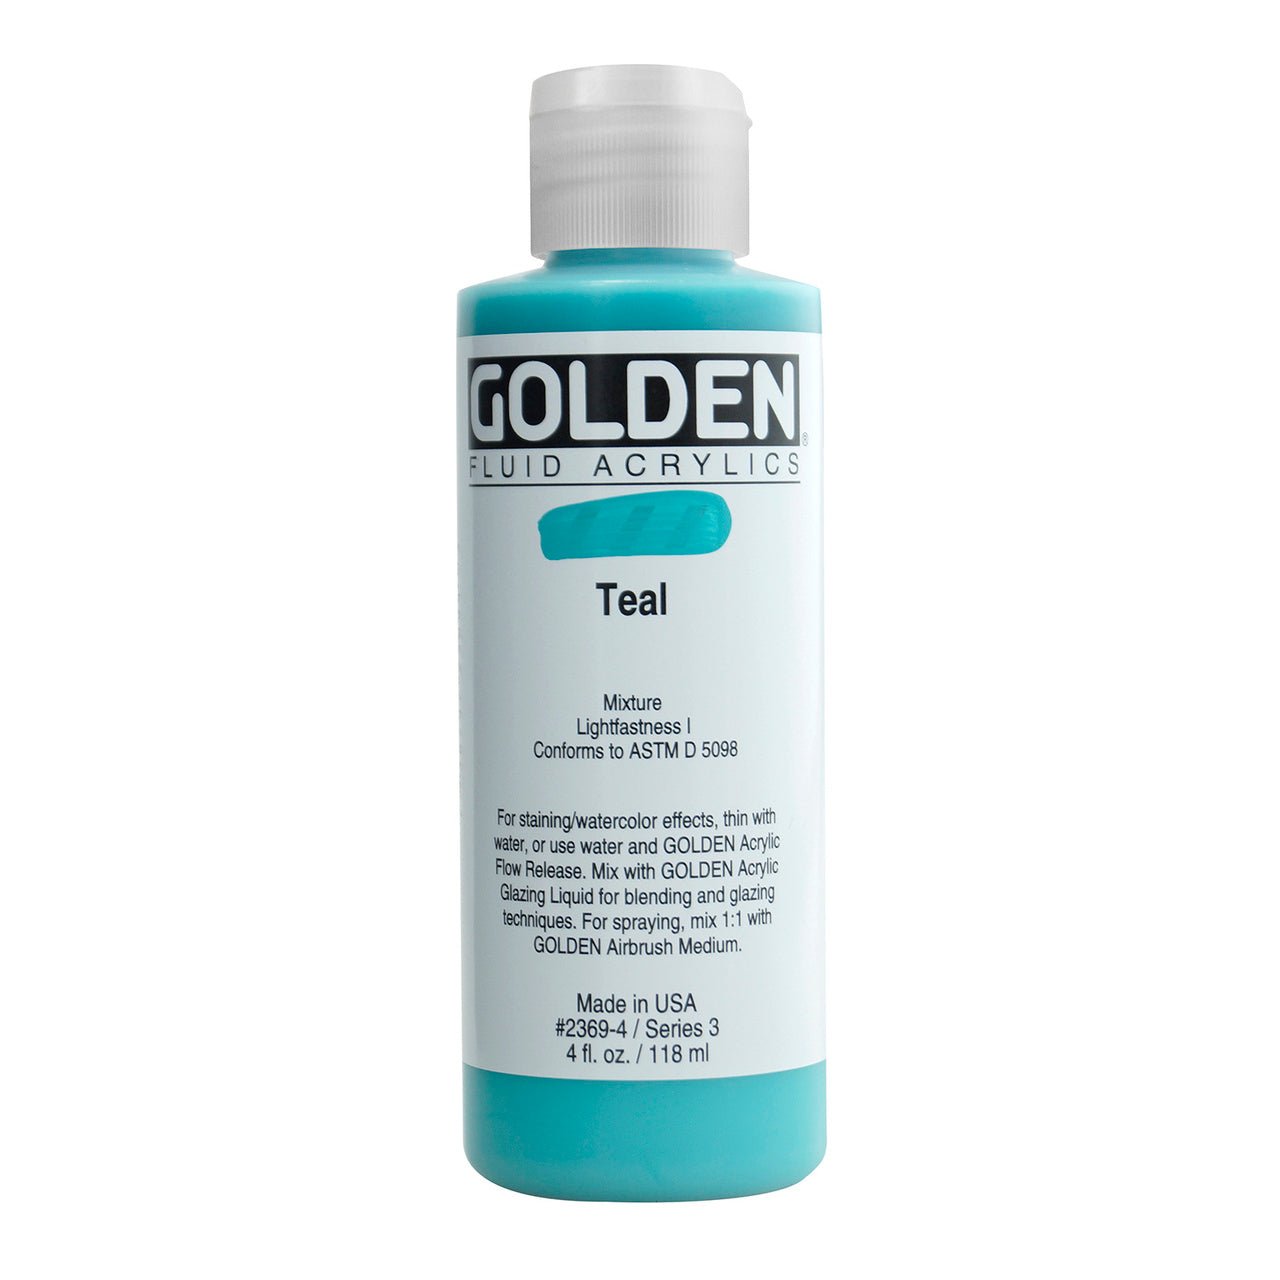 Golden Fluid Acrylic Teal 4 oz - merriartist.com